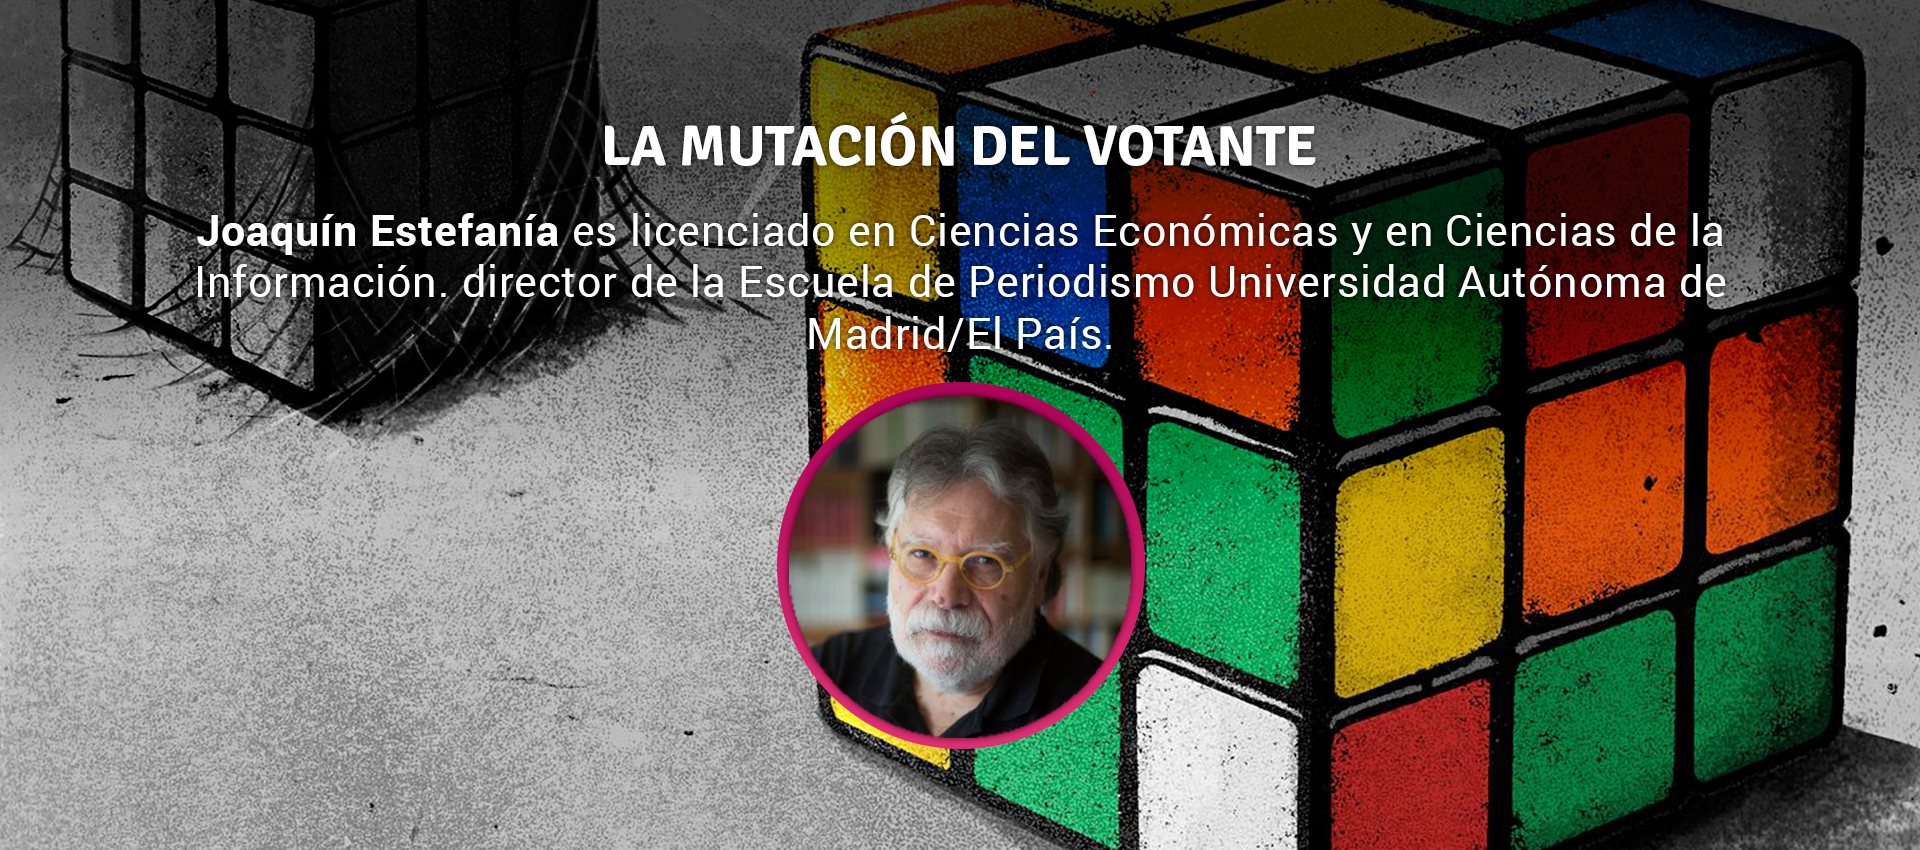 Joaquin Estefania - LA MUTACIÓN DEL VOTANTE